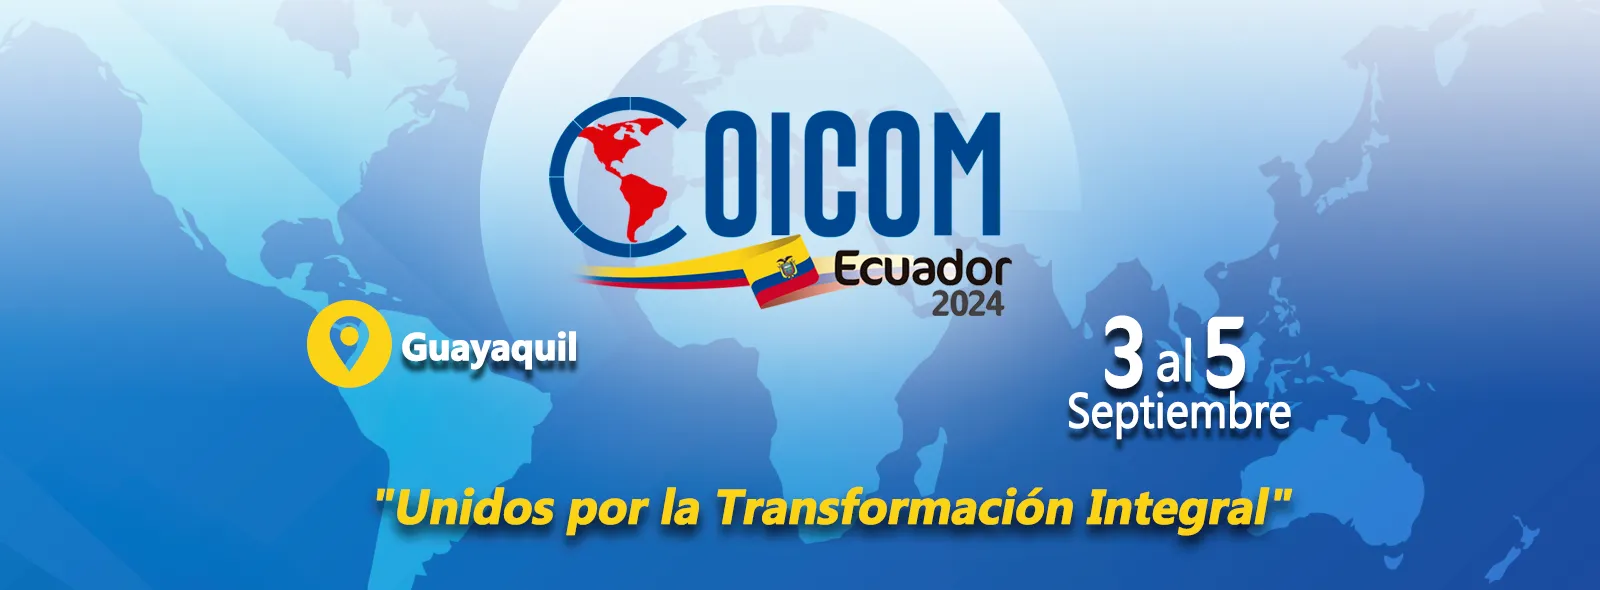 Coicom Ecuador 2024